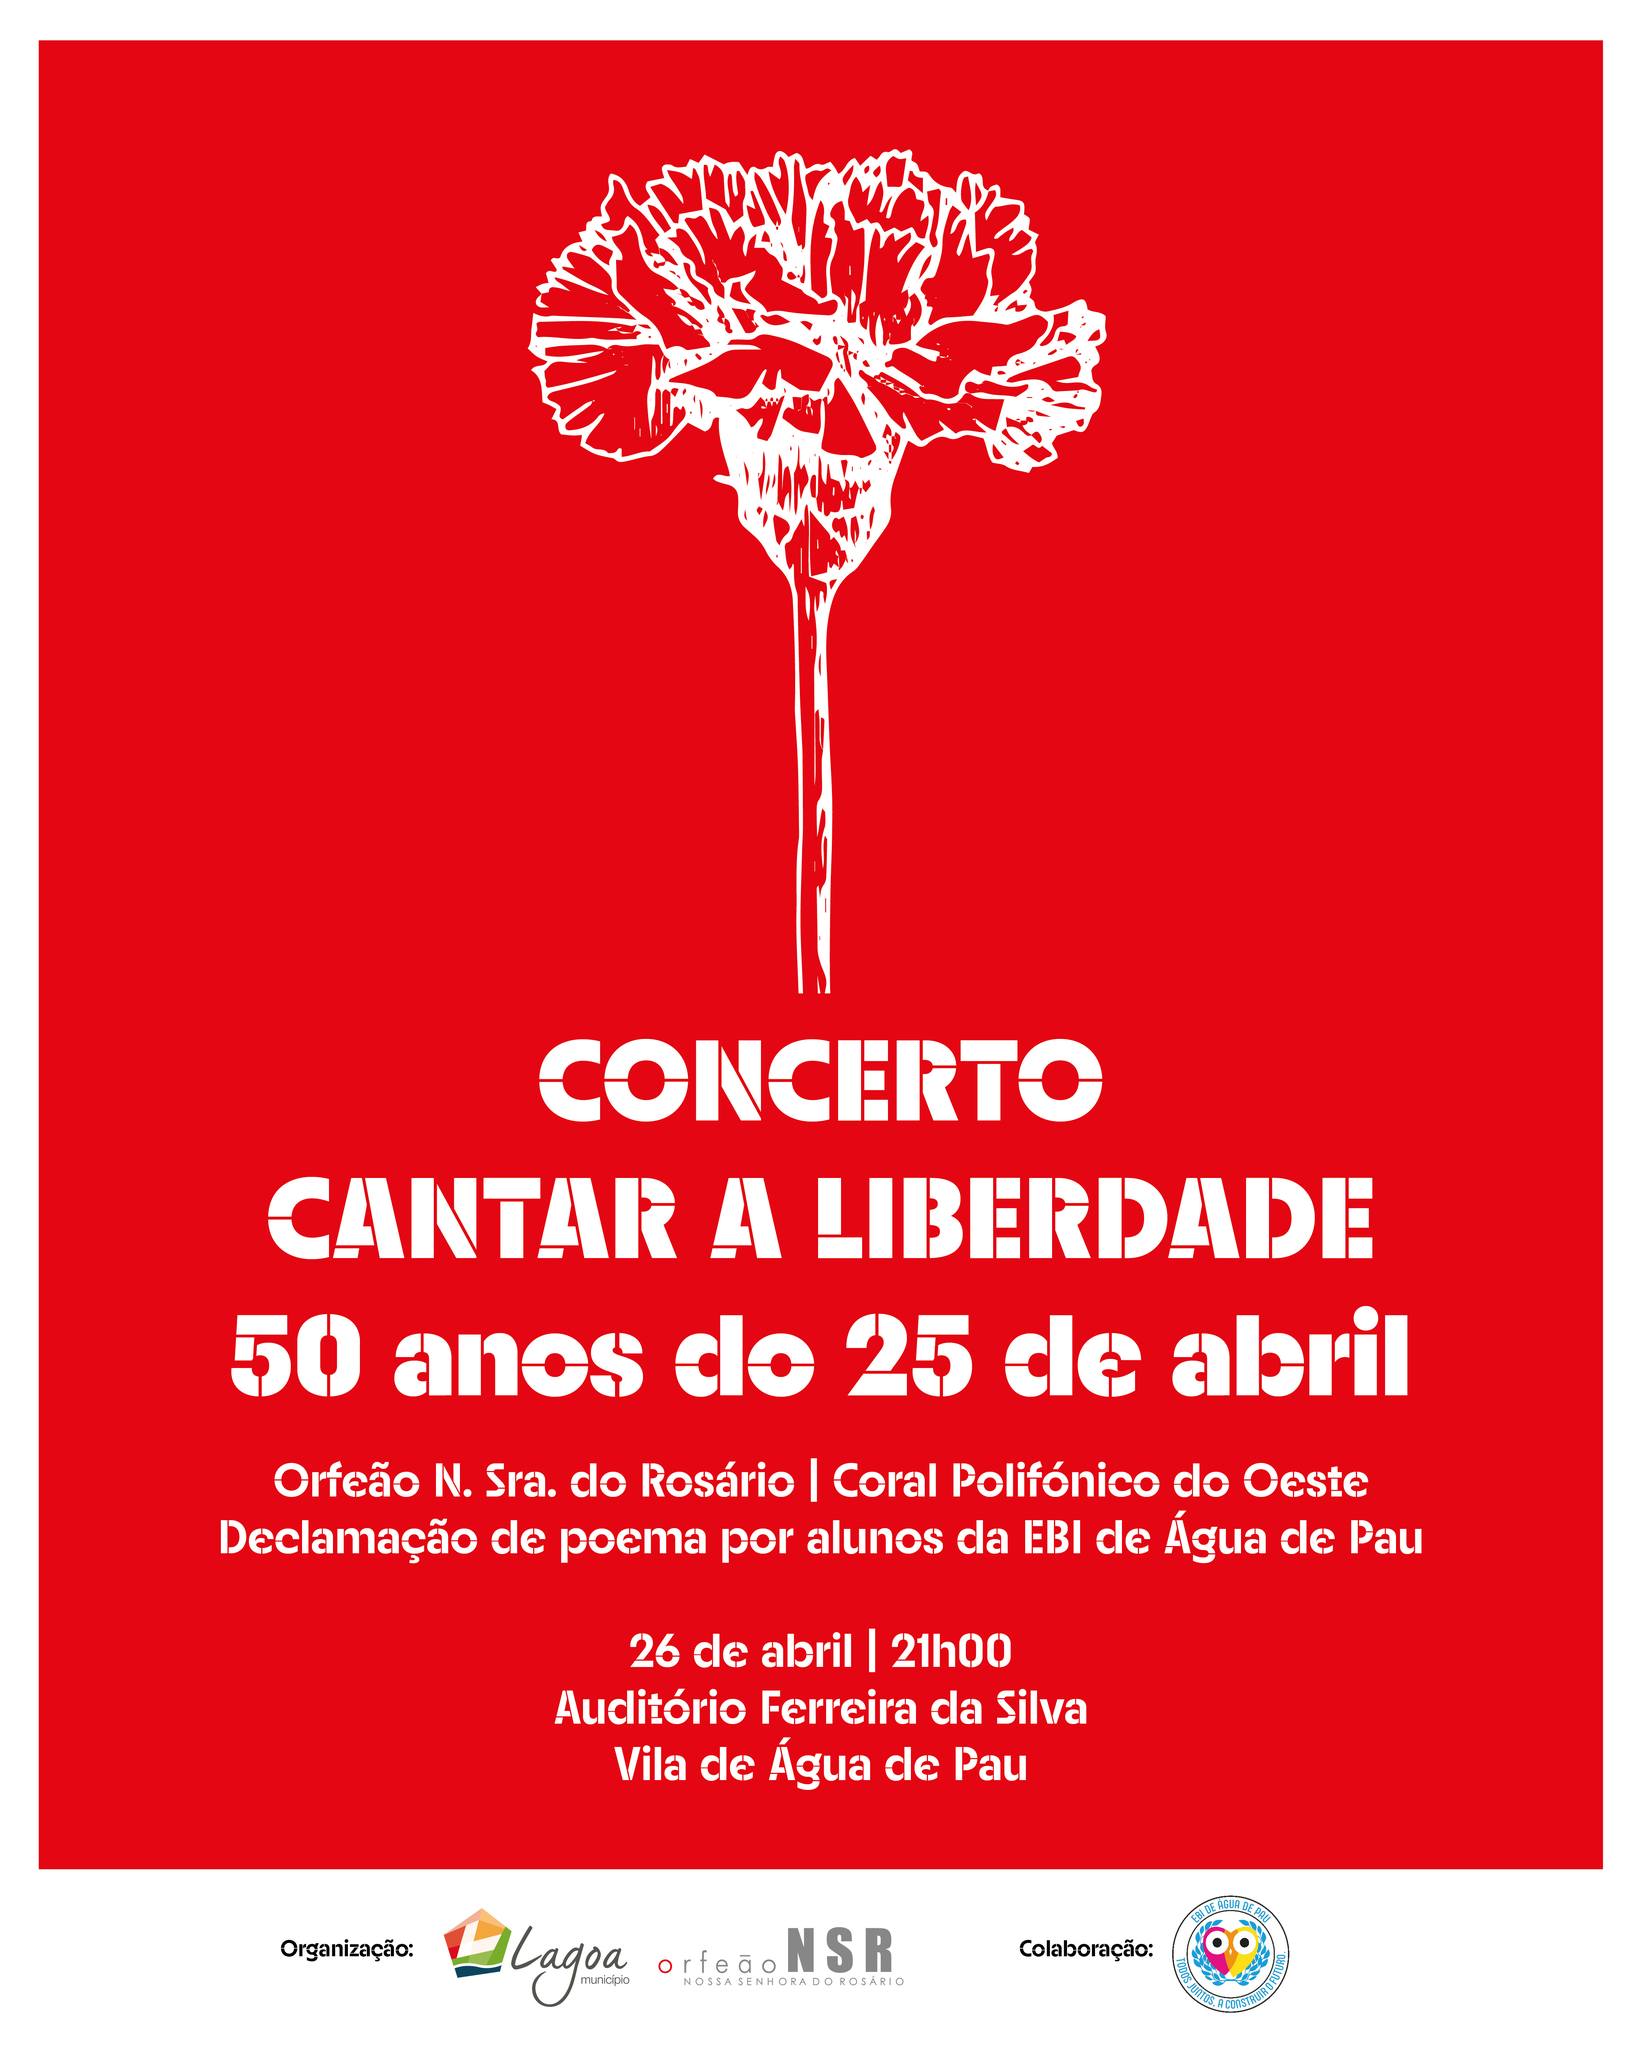 Capa do Evento Concerto Cantar a Liberdade 50 anos do 25 de abril